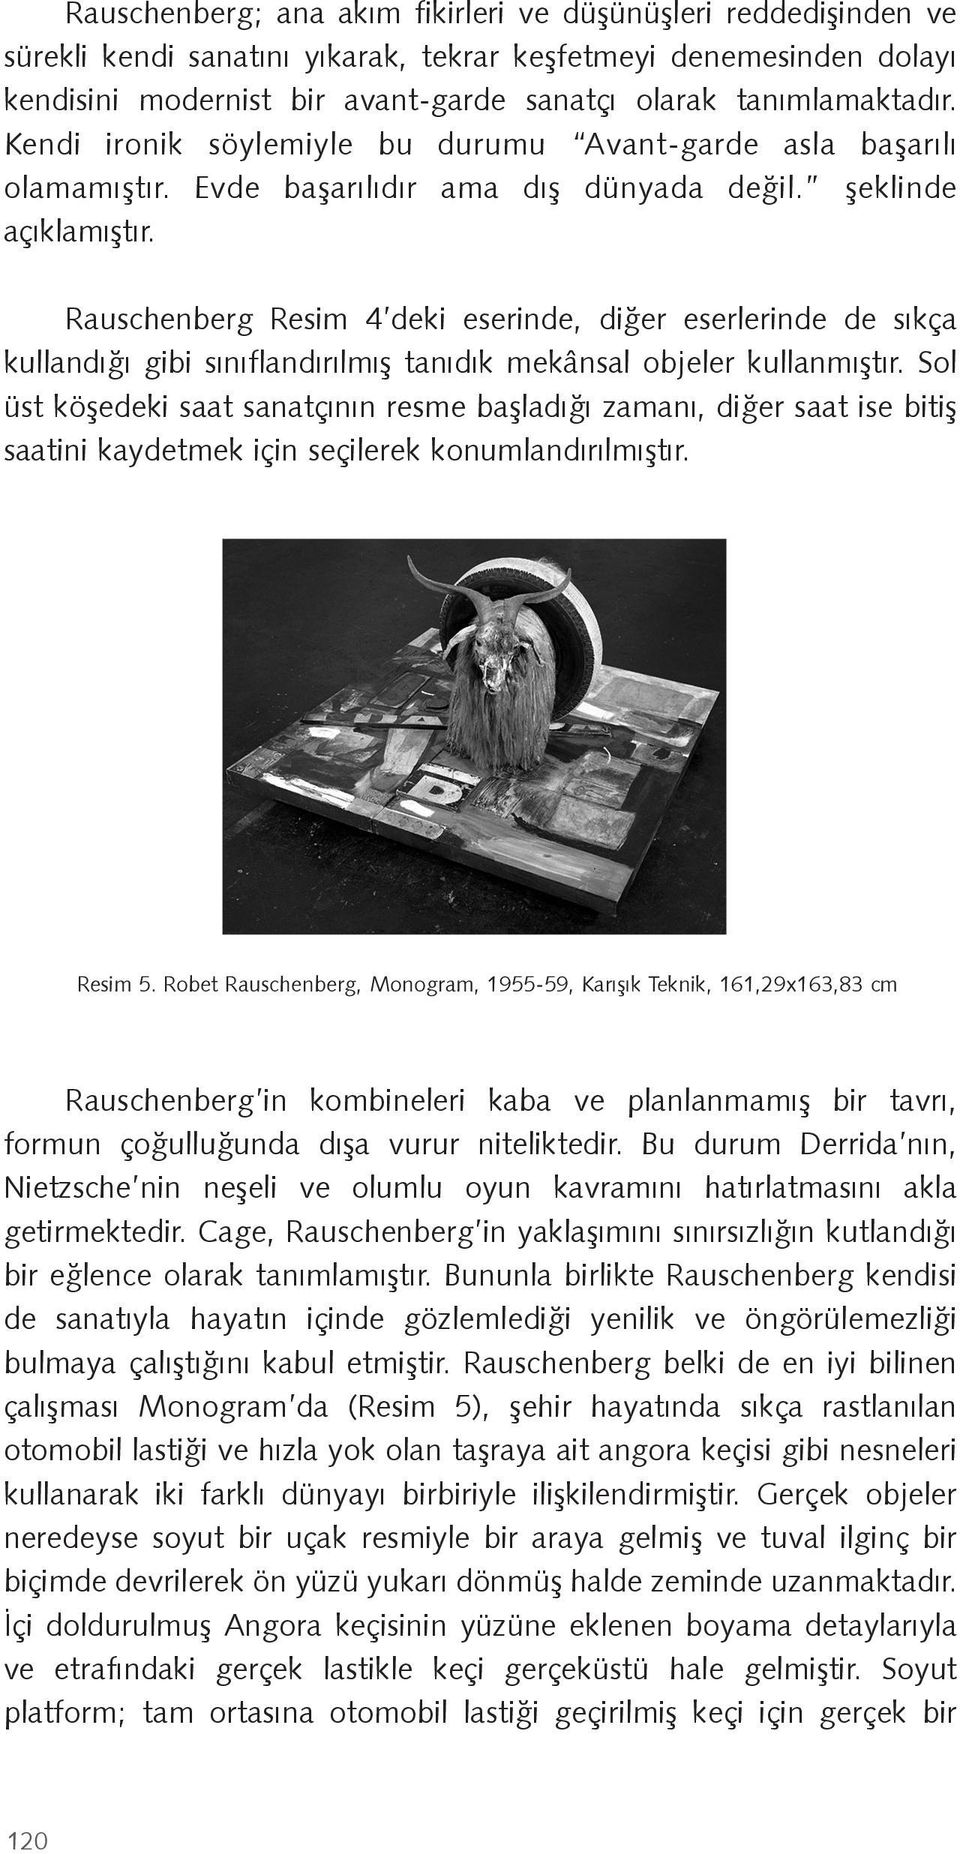 Rauschenberg Resim 4 deki eserinde, di er eserlerinde de sıkça kullandı ı gibi sınıflandırılmı tanıdık mekânsal objeler kullanmı tır.